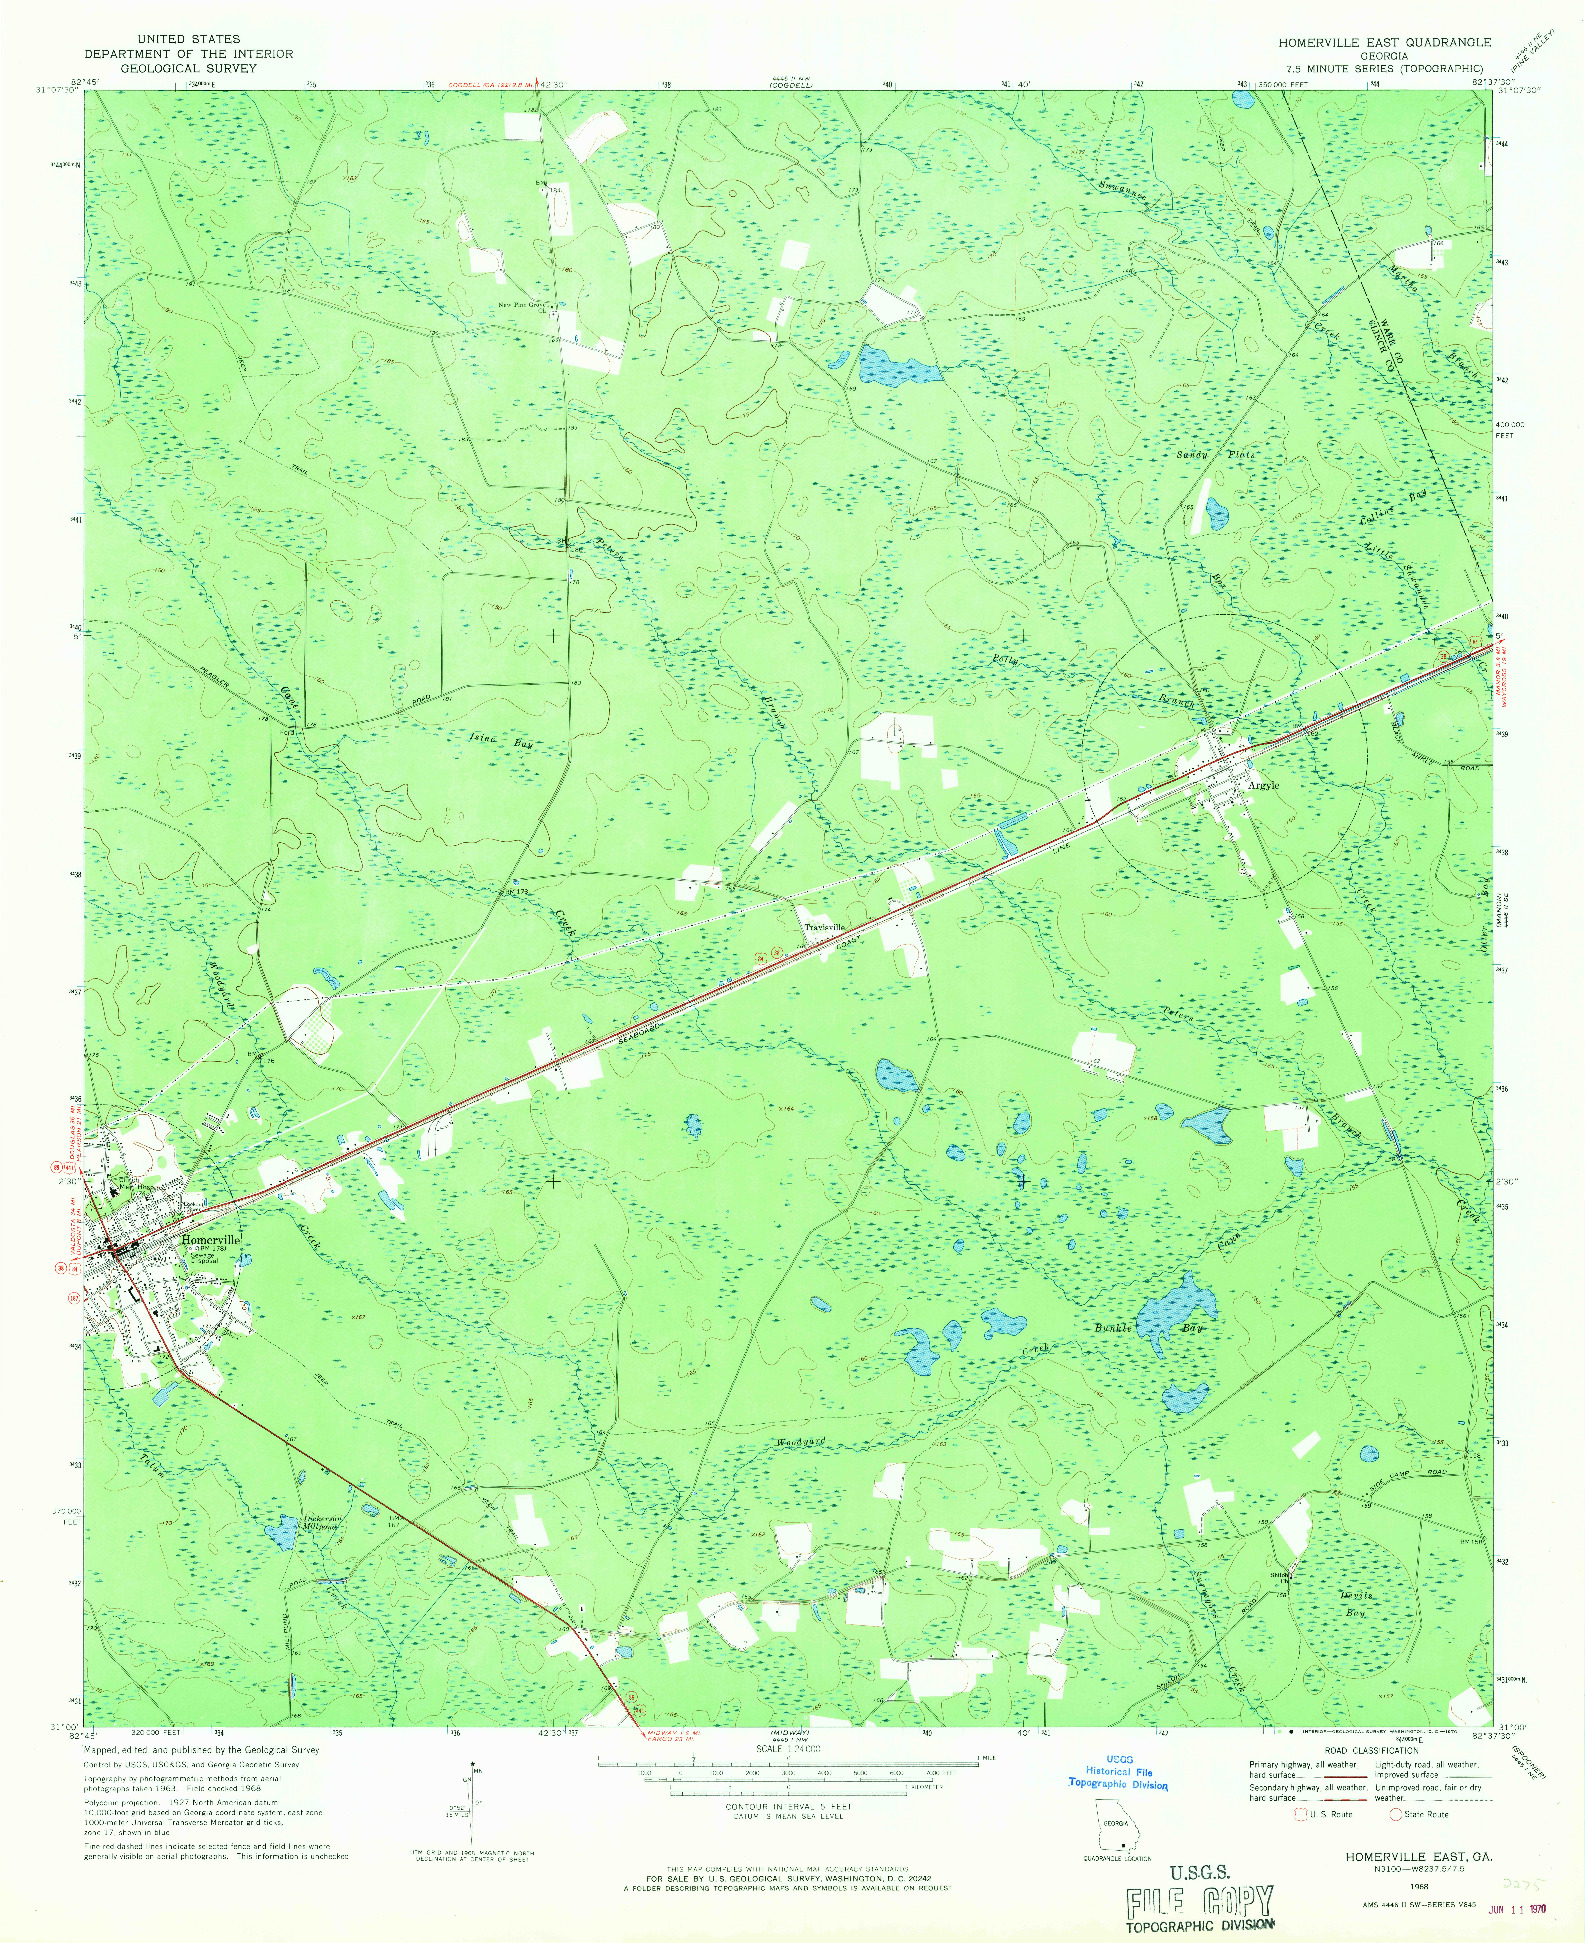 USGS 1:24000-SCALE QUADRANGLE FOR HOMERVILLE EAST, GA 1968